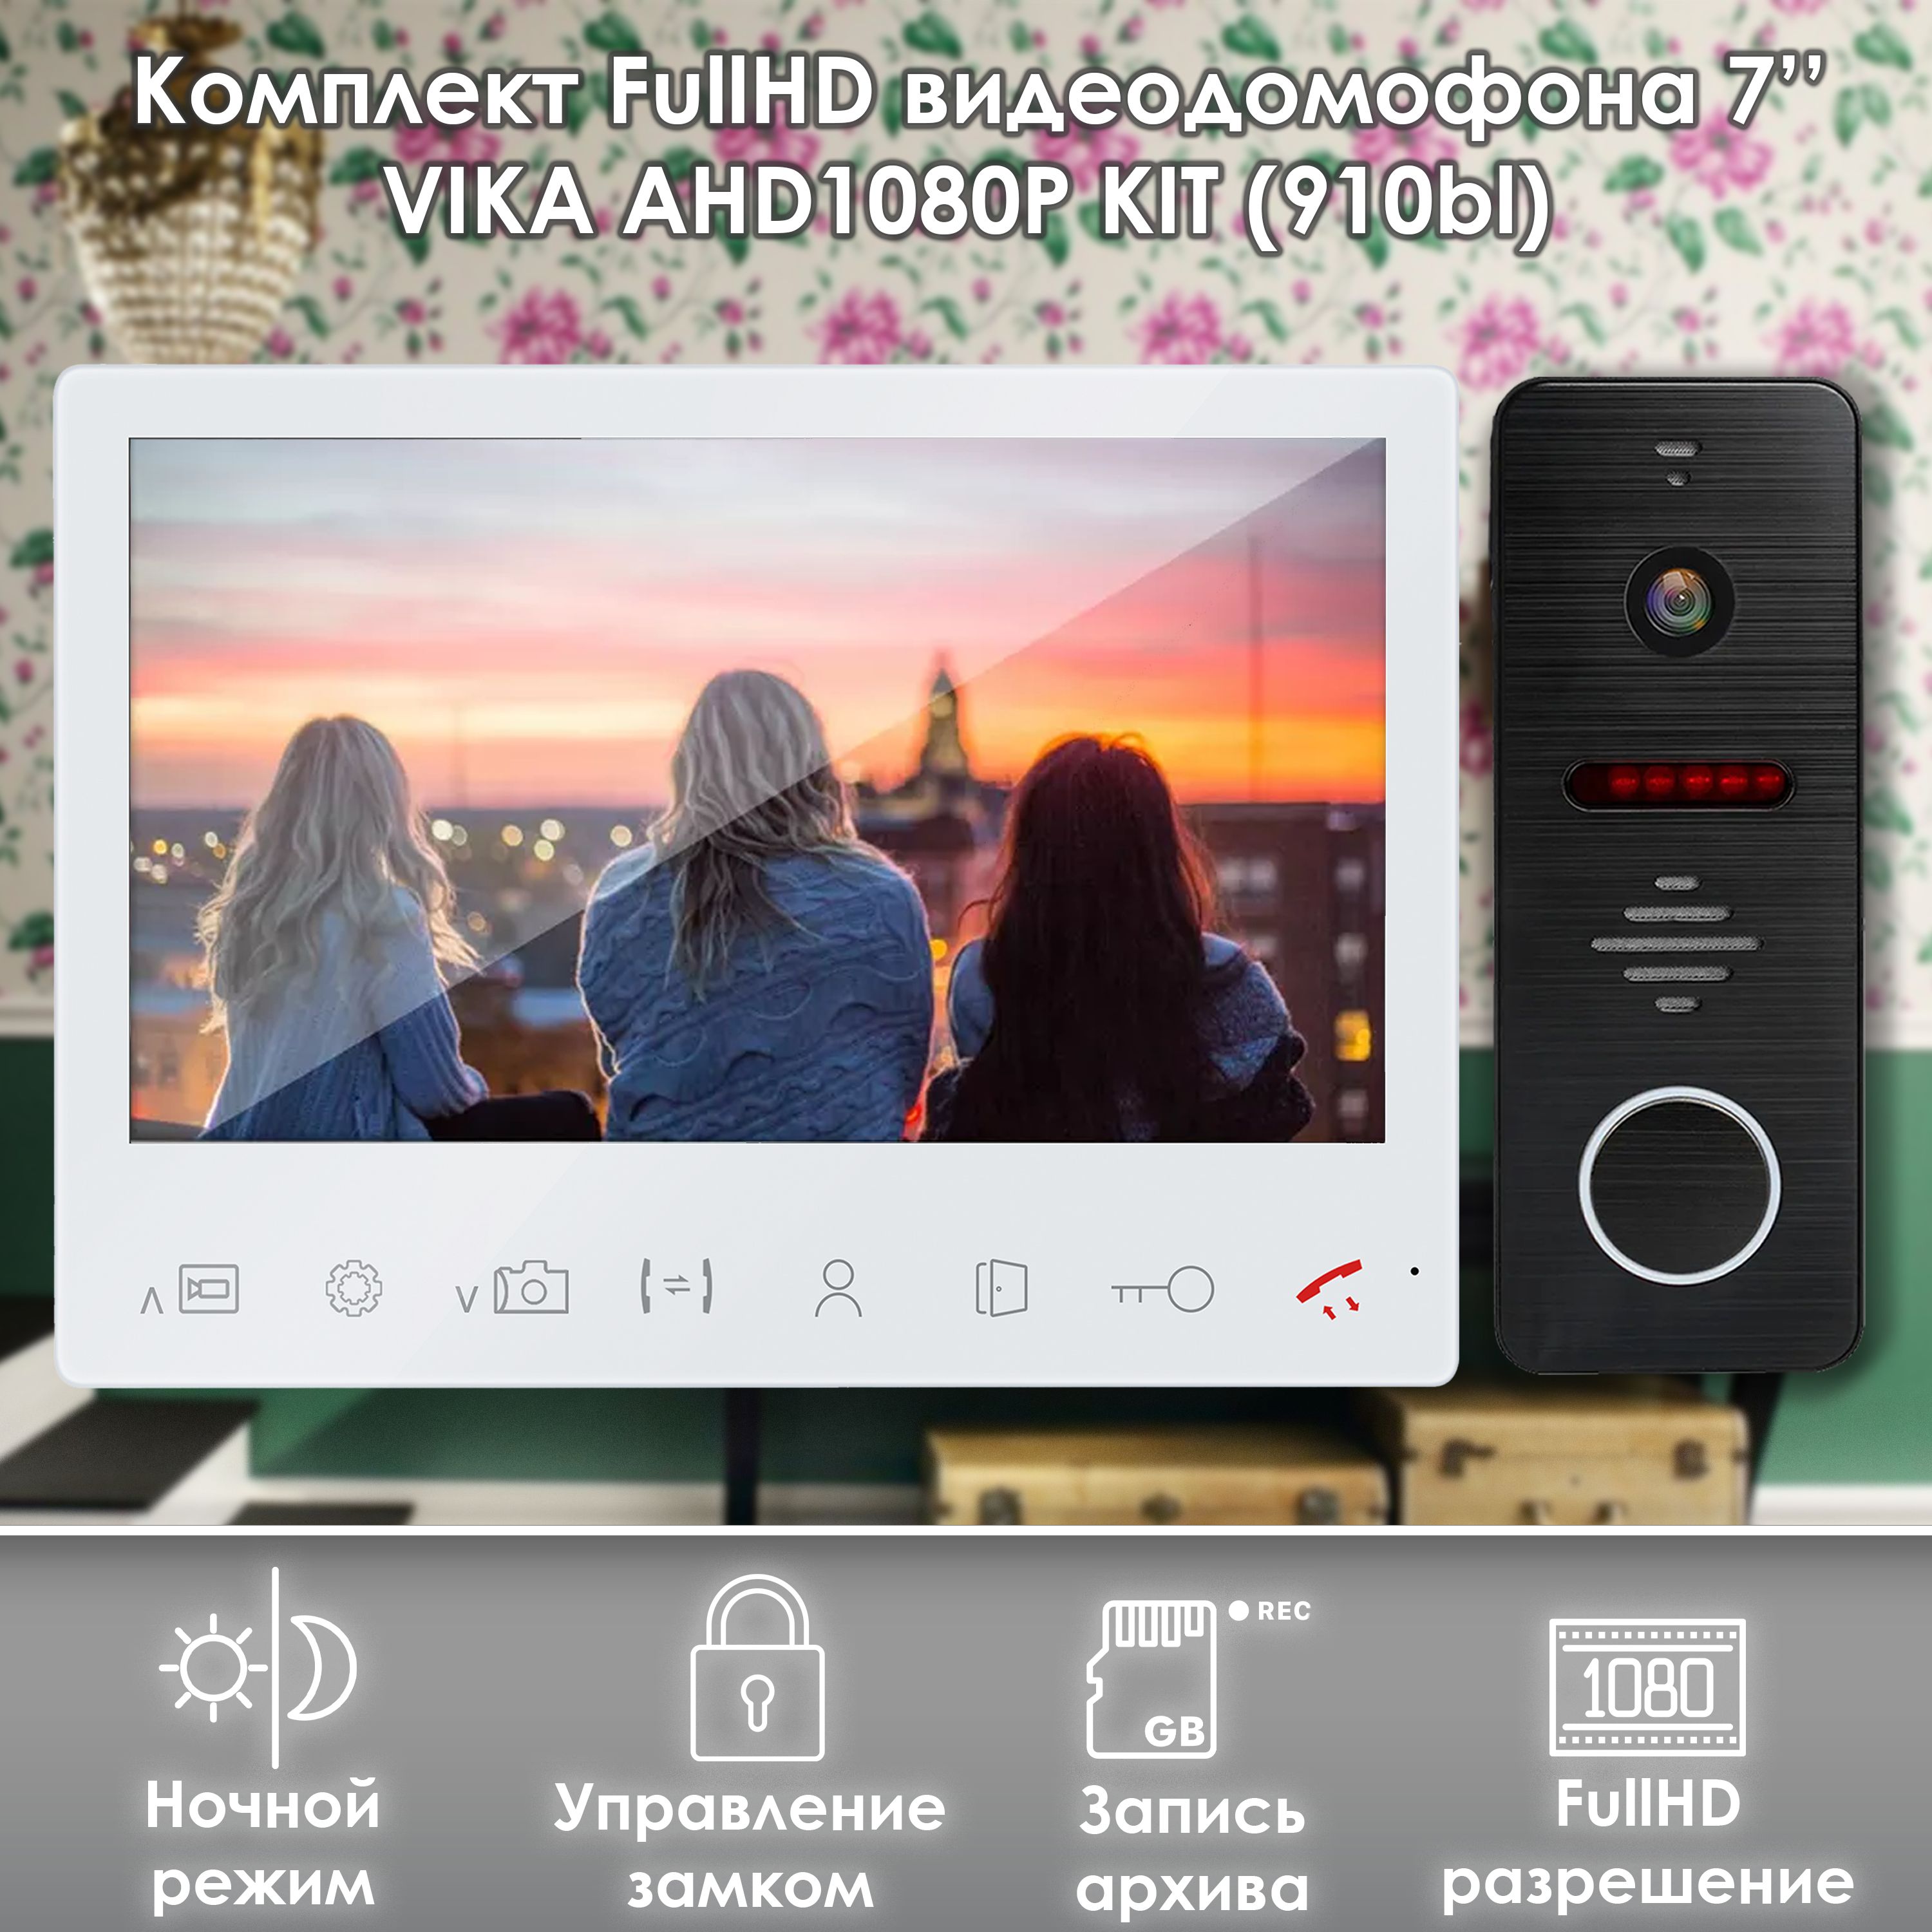 Комплект видеодомофона Alfavision Vika-KIT (910bl) Full HD 7 дюймов комплект видеодомофона alfavision nona kit white 910bl full hd 7 дюймов